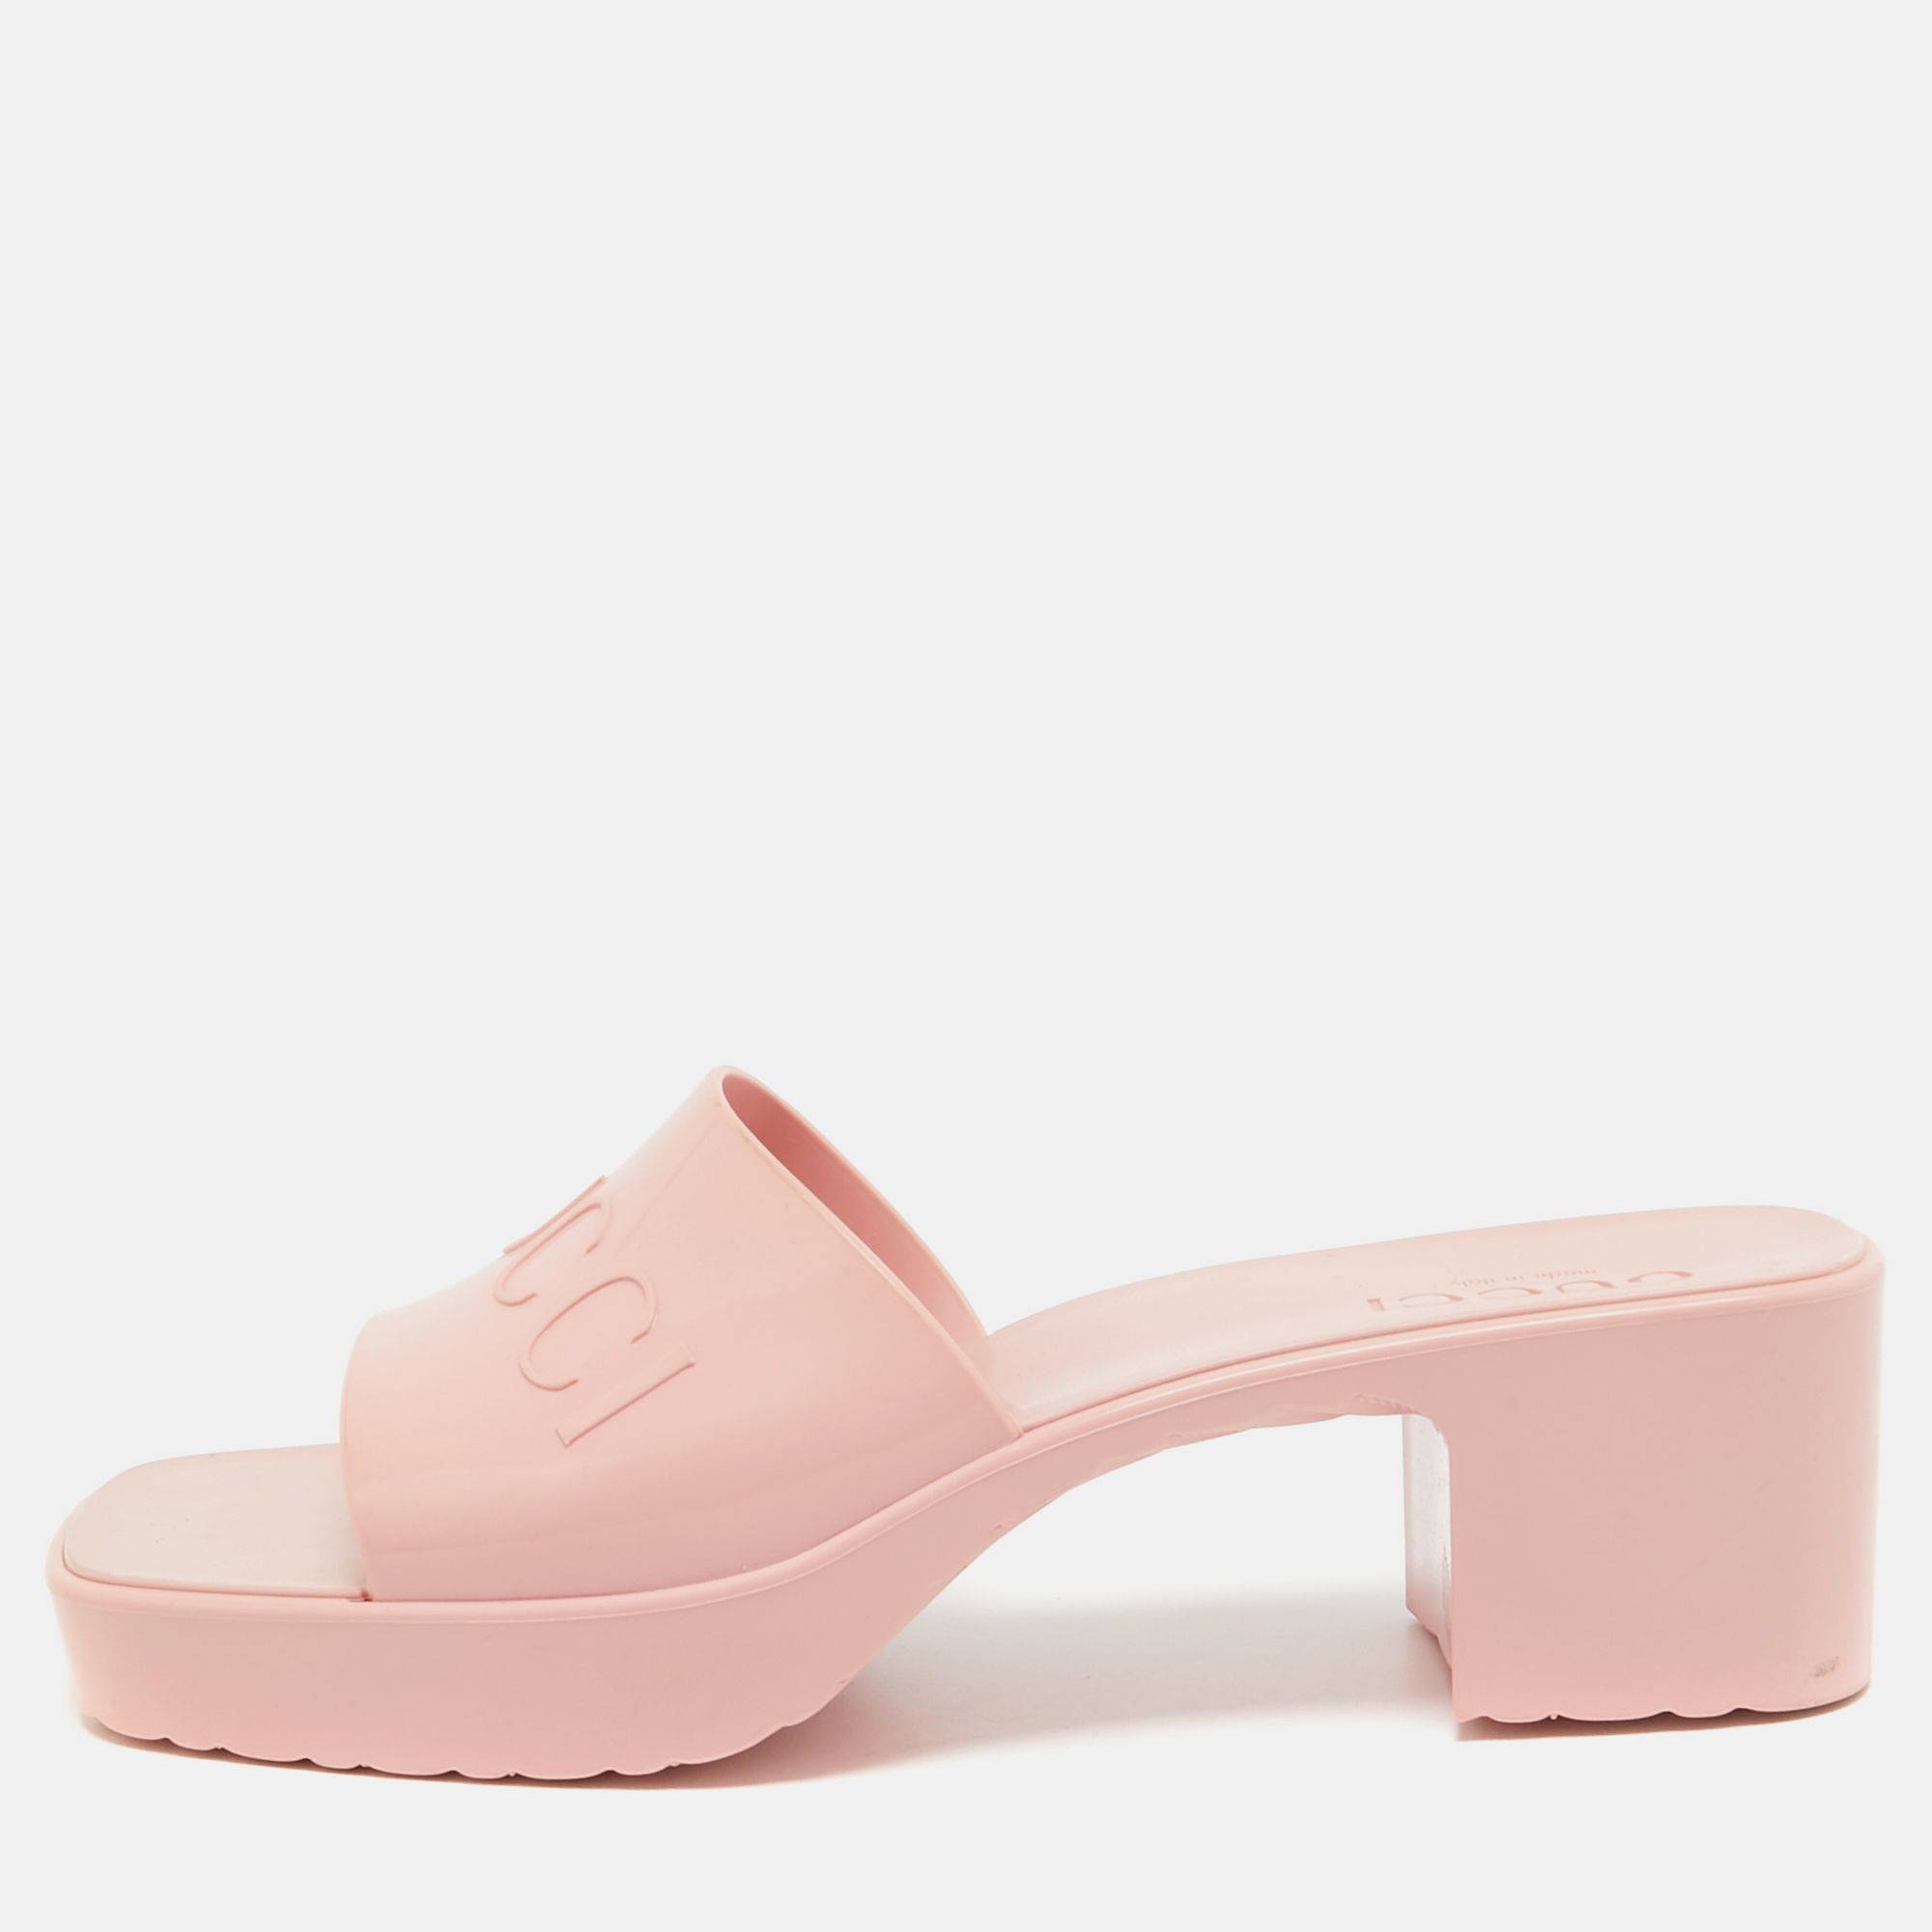 Gucci pink rubber logo embossed platform slide sandals size 38